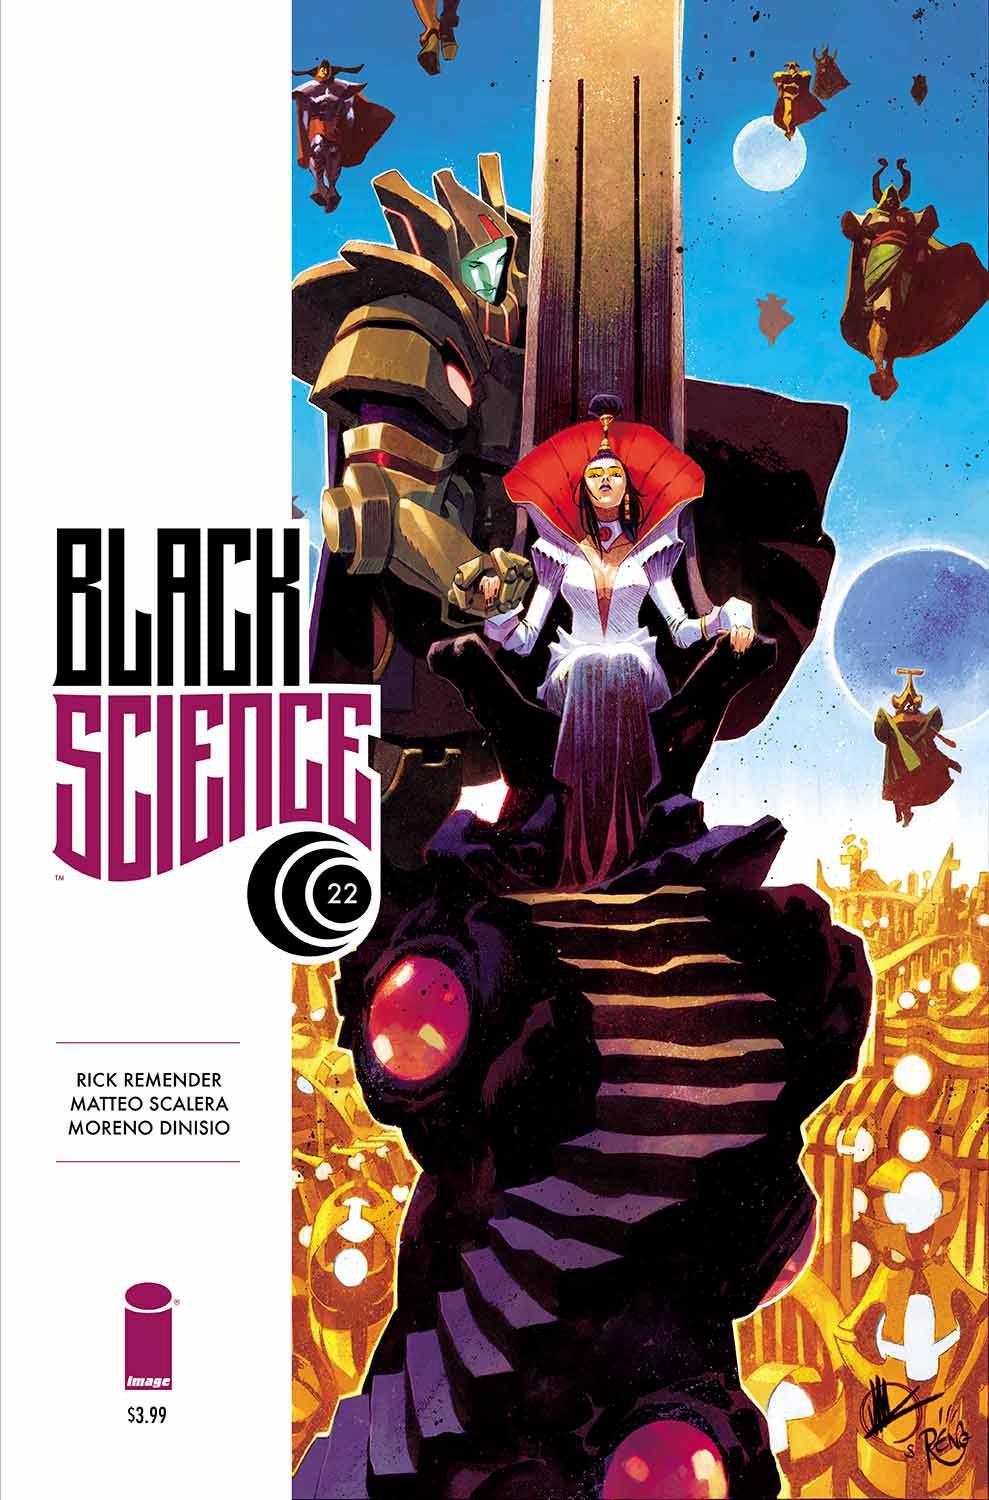 BLACK SCIENCE #22 (MR) COVER